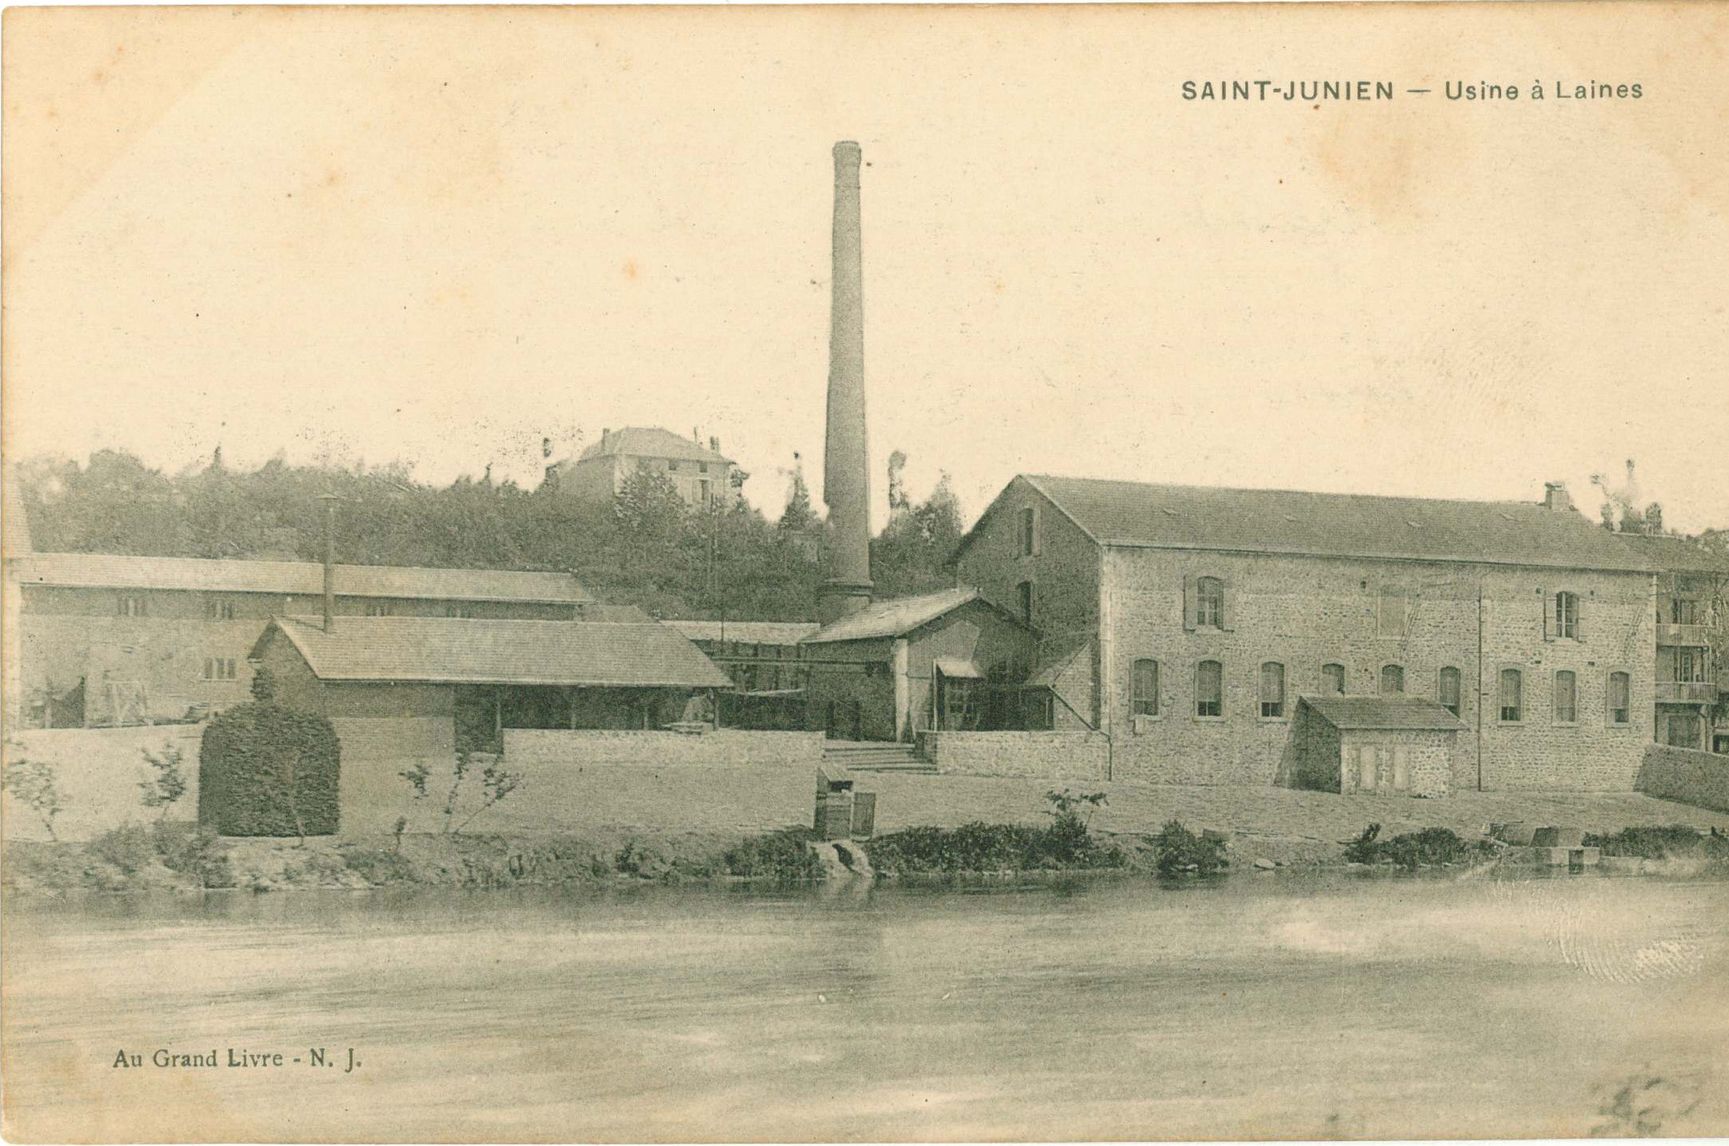 L'usine à laines. Carte postale au Grand Livre, vers 1900.